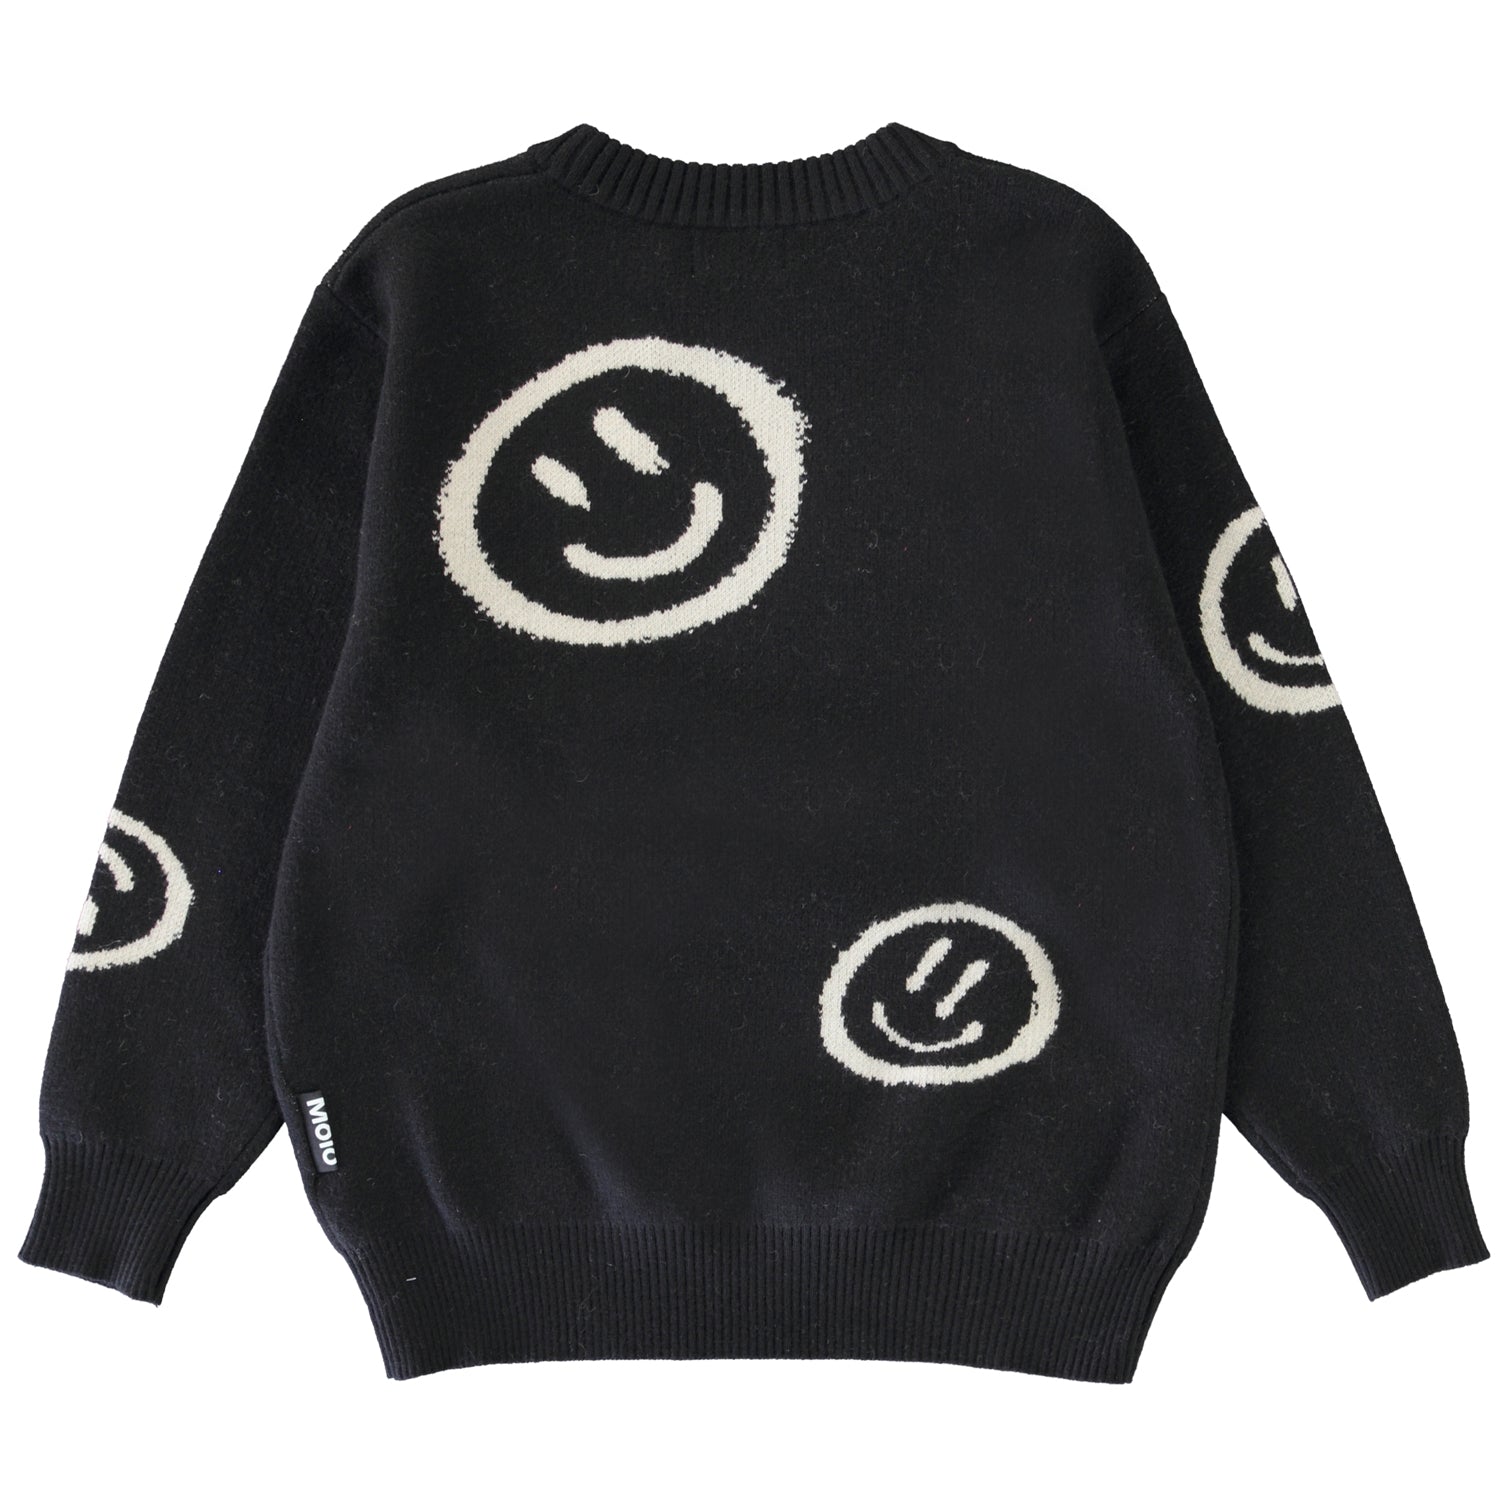 Molo Bello Sweater - Black